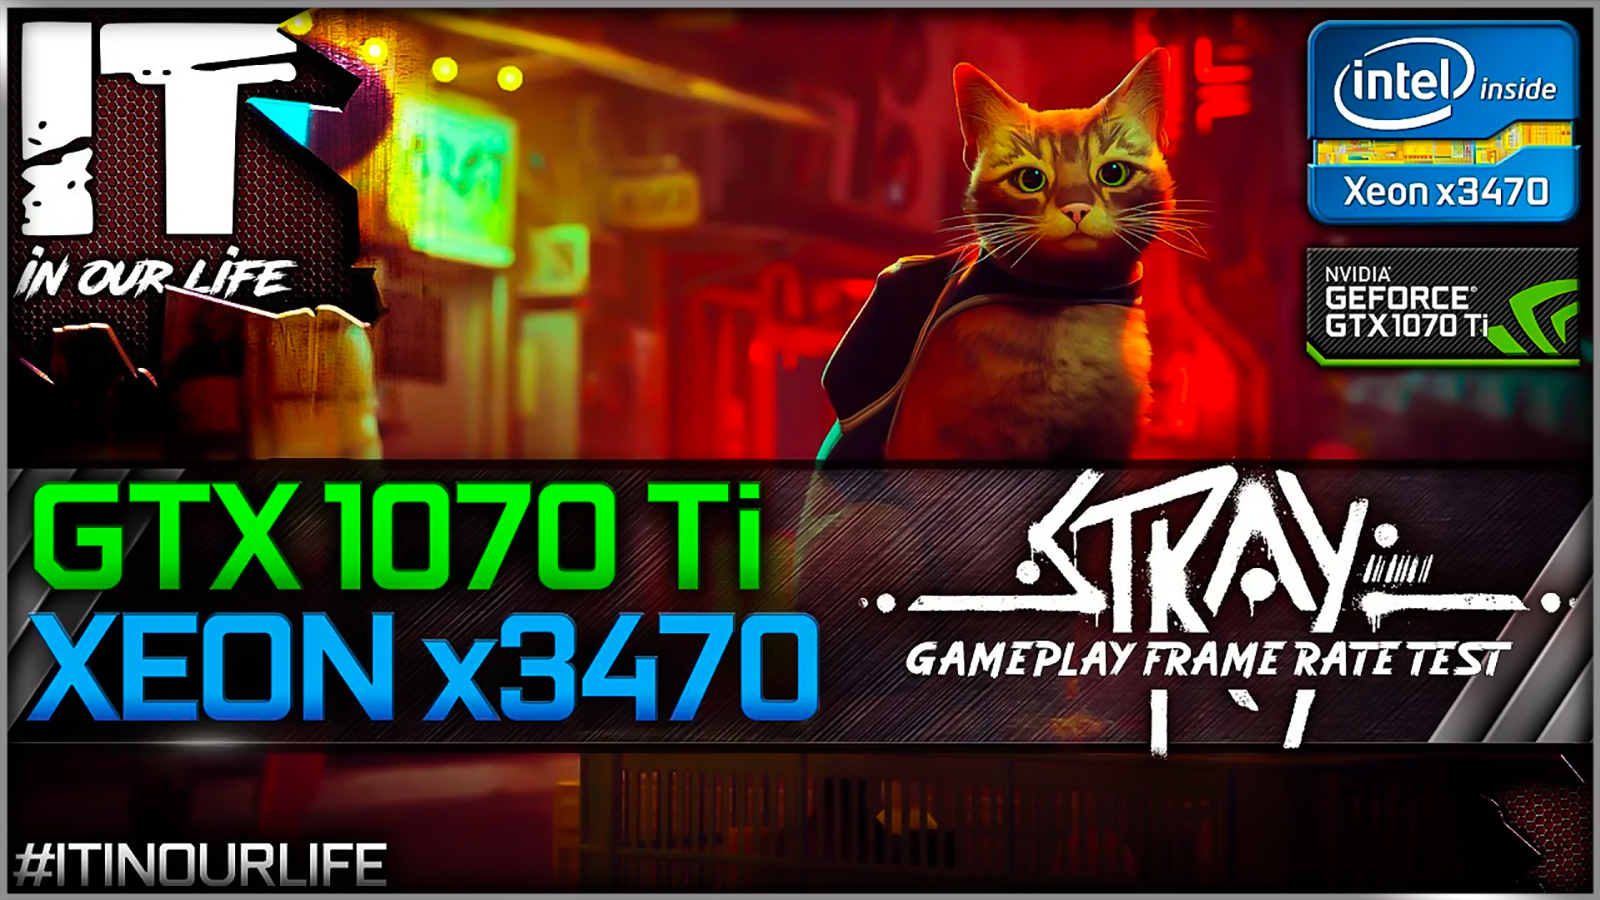 Stray - Xeon x3470 + GTX 1070 Ti | Gameplay | Frame Rate Test | 1080p